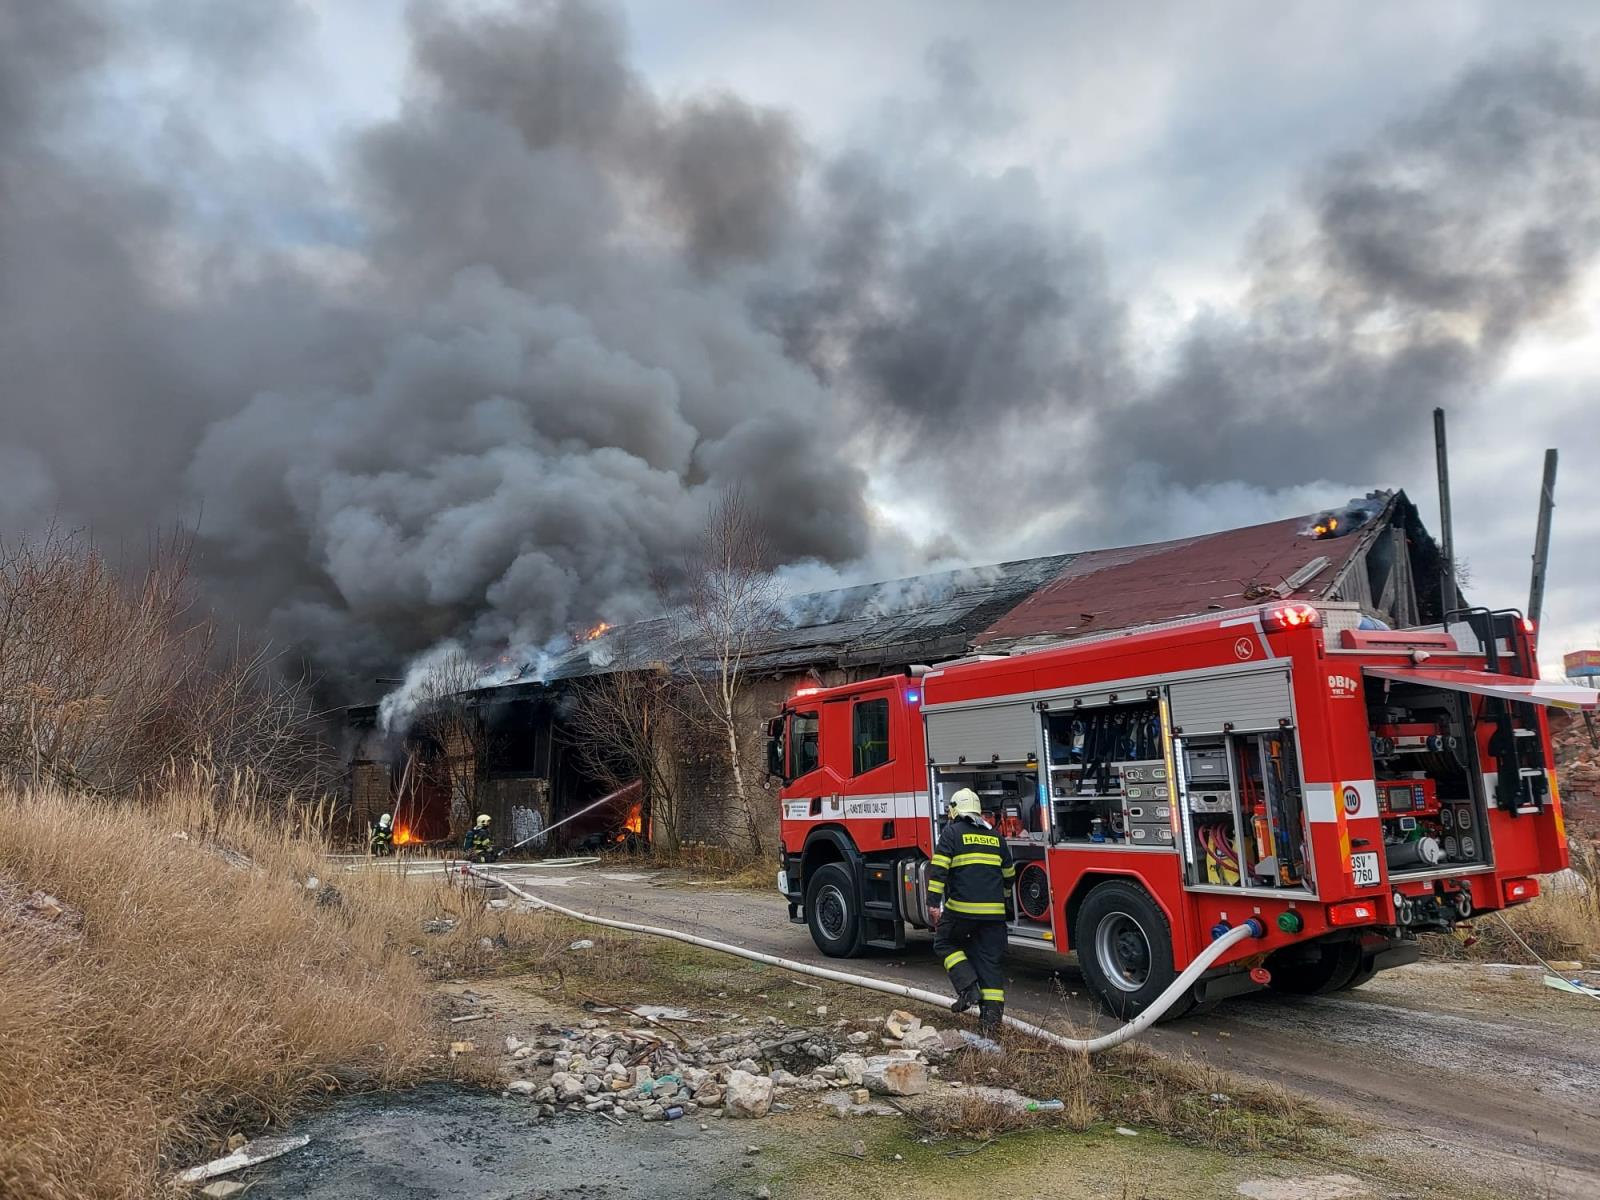 SČK_Požár pneumatik v Kladně_hasiči hasí hořící objekt.jpg